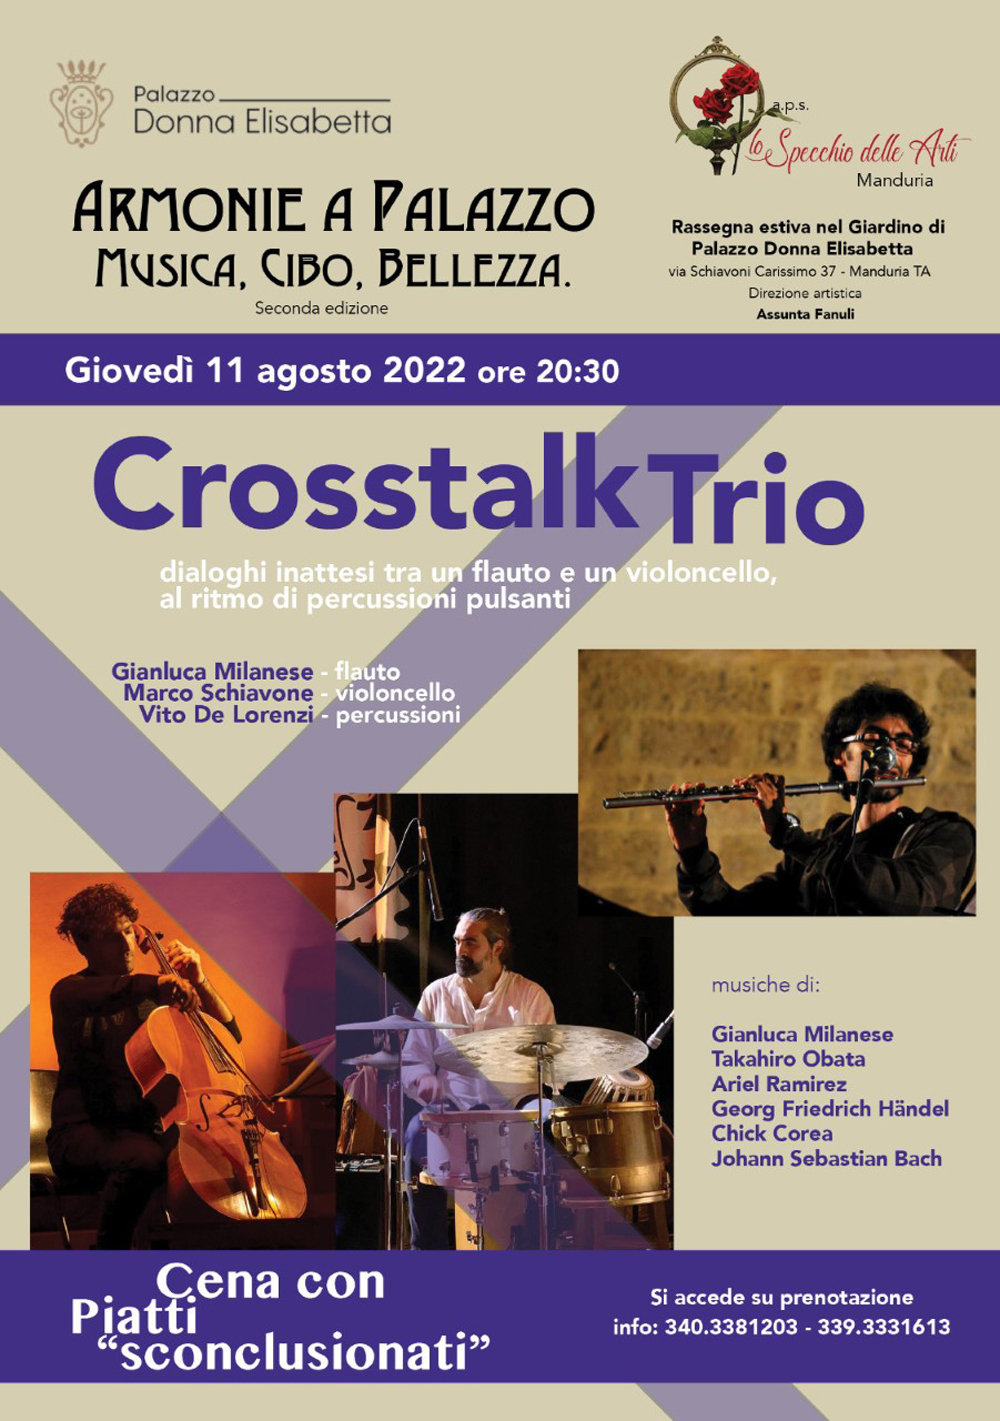 MANDURIA. Palazzo Donna Elisabetta: i Crosstalk Trio in concerto